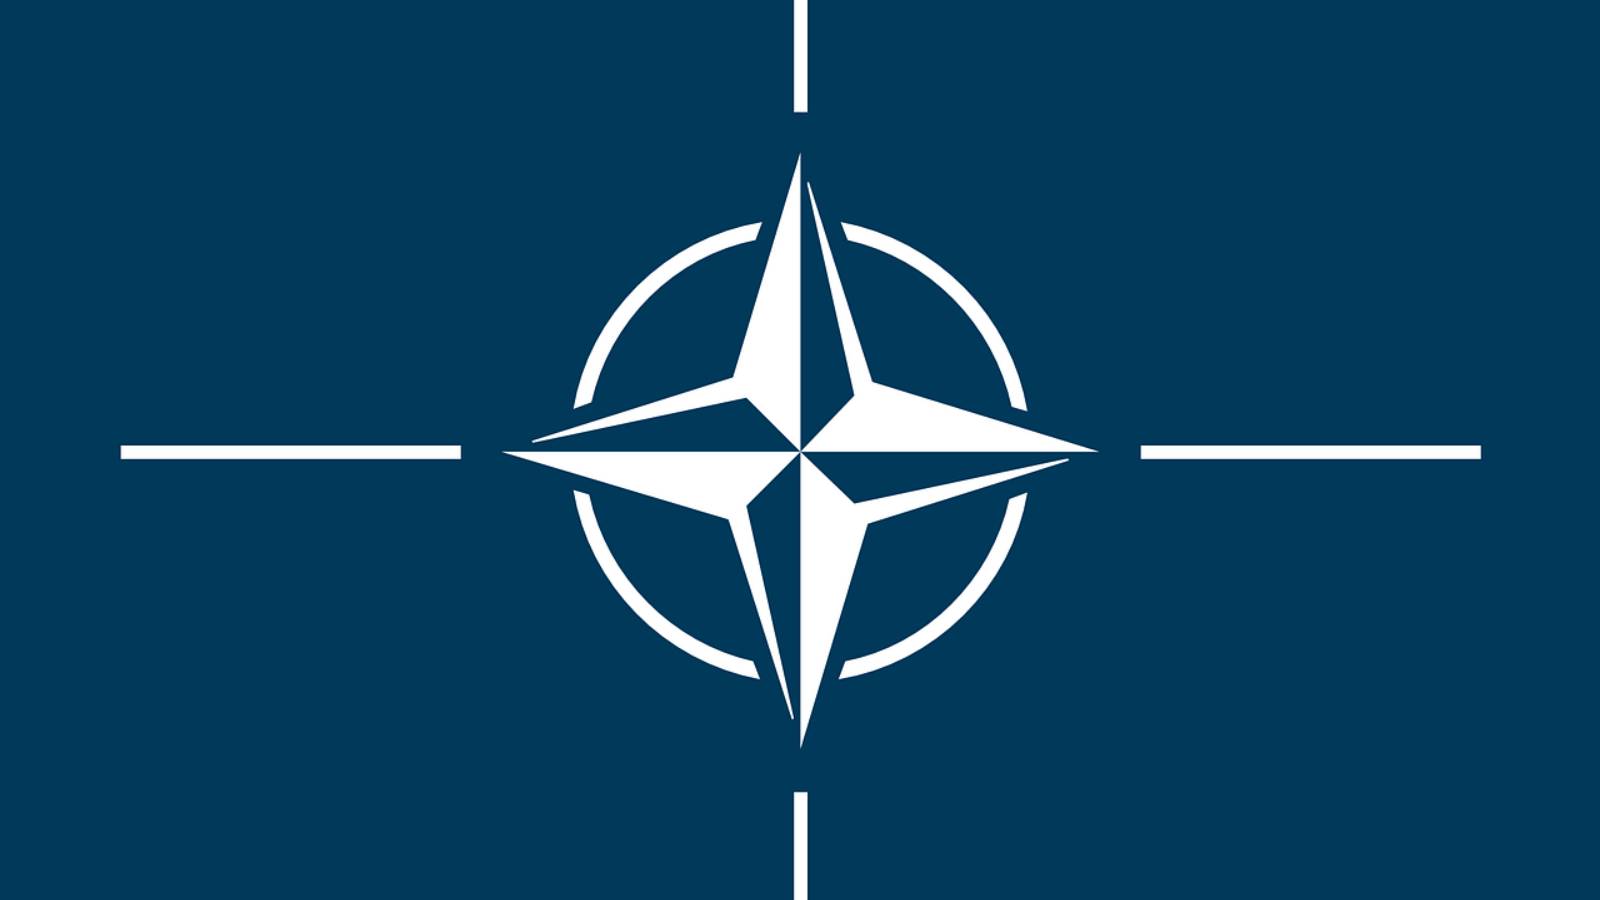 NATO genomför stora multinationella luftövningar i Rumänien